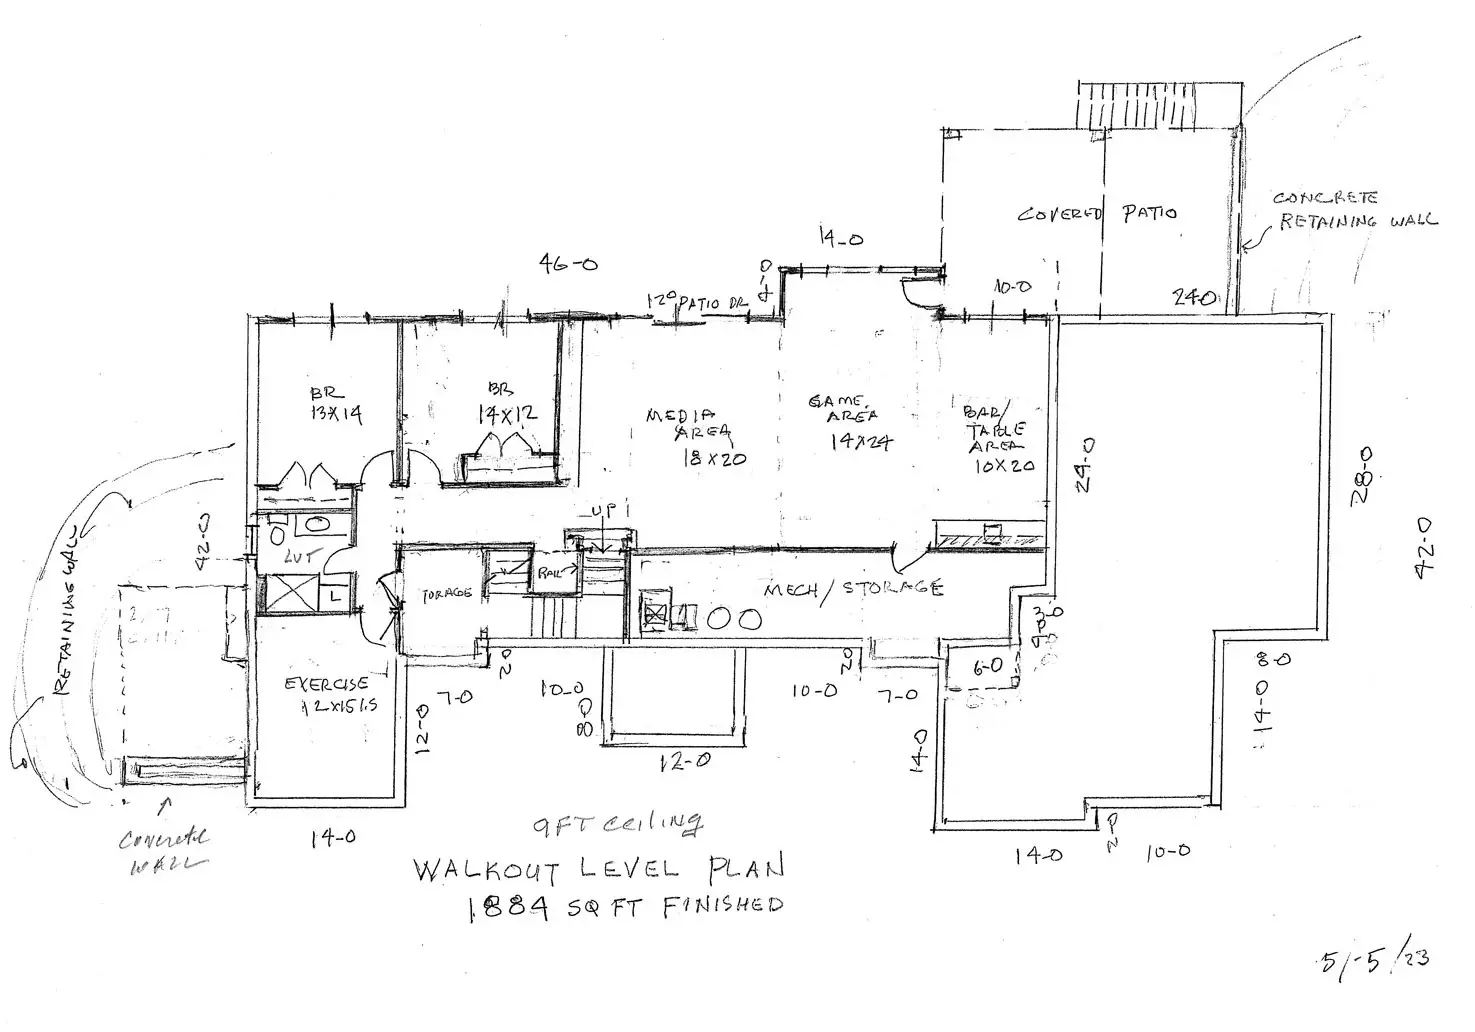 TJB Annette Home Plan Walkout Floor Plan